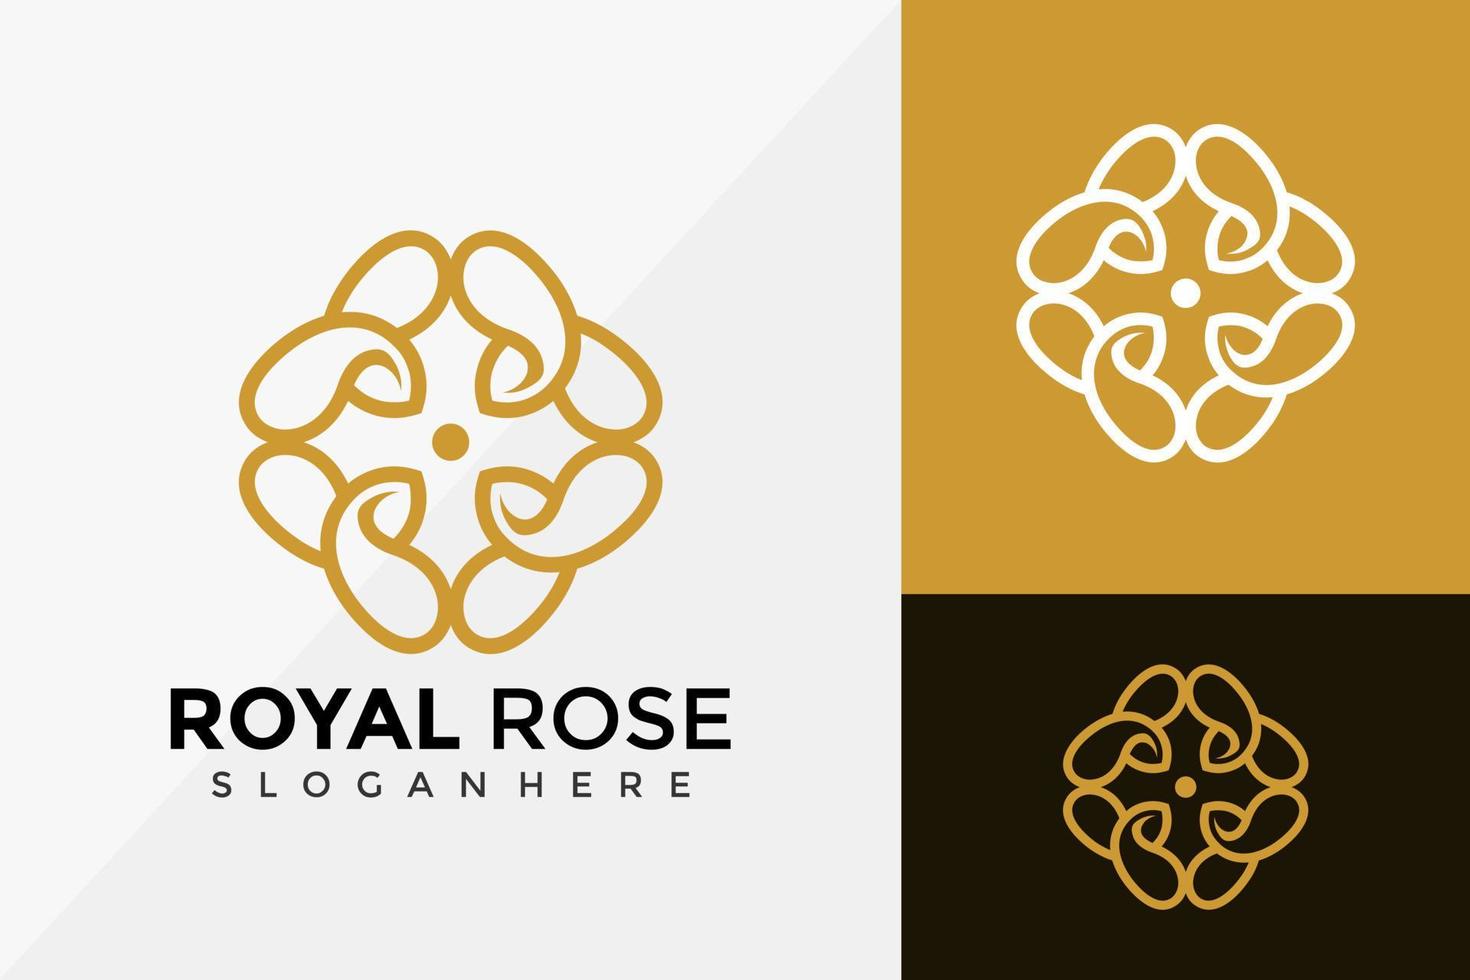 création de logo de fleur de rose royale, logos d'identité de marque conçoit un modèle d'illustration vectorielle vecteur